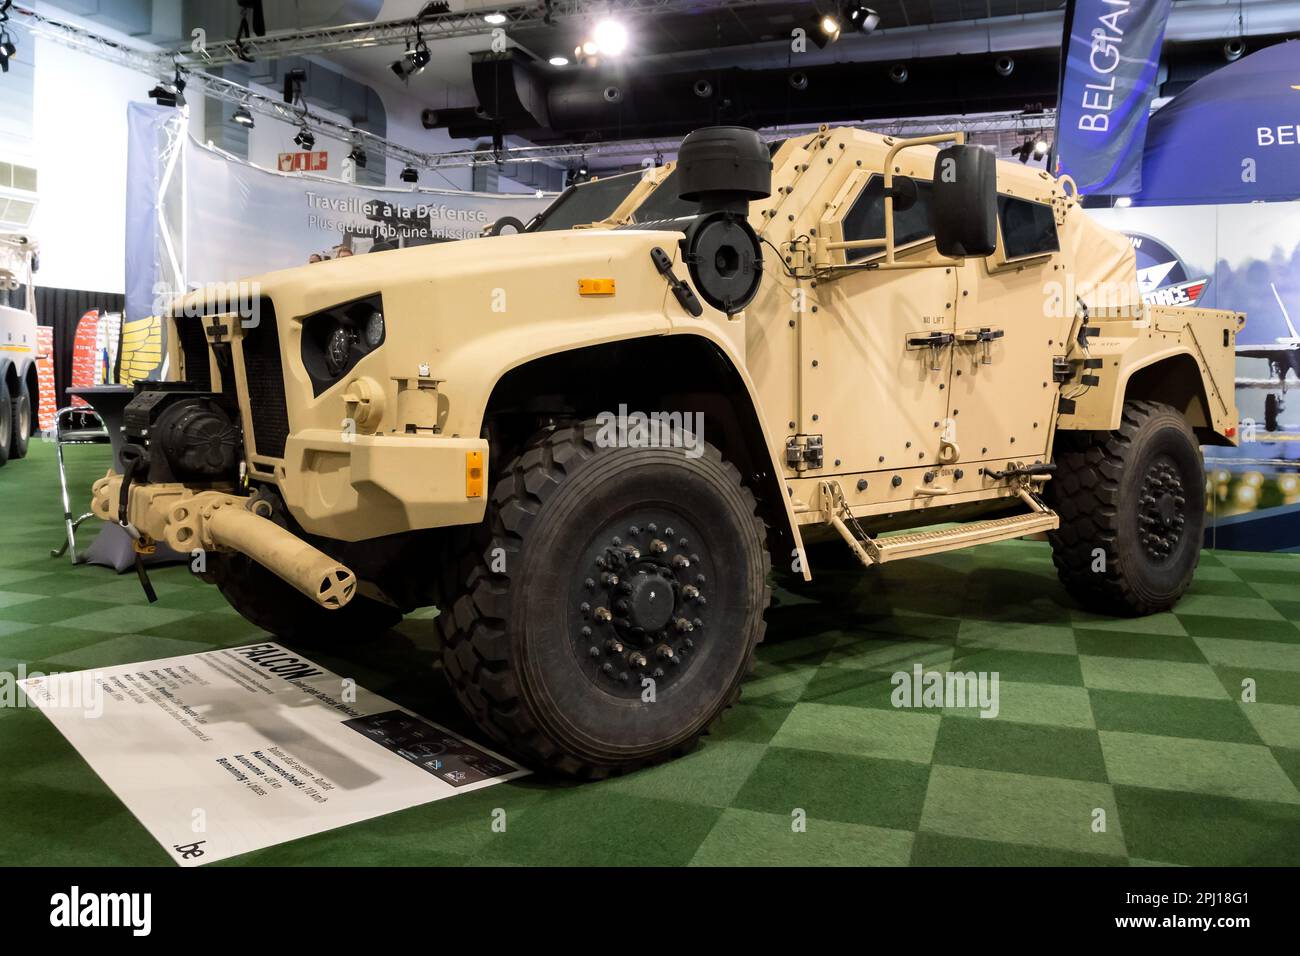 Oshkosh L-ATV (Light combat Tactical All-terrain Vehicle) véhicule militaire multirôle de combat présenté au salon européen de l'automobile de Bruxelles. B Banque D'Images